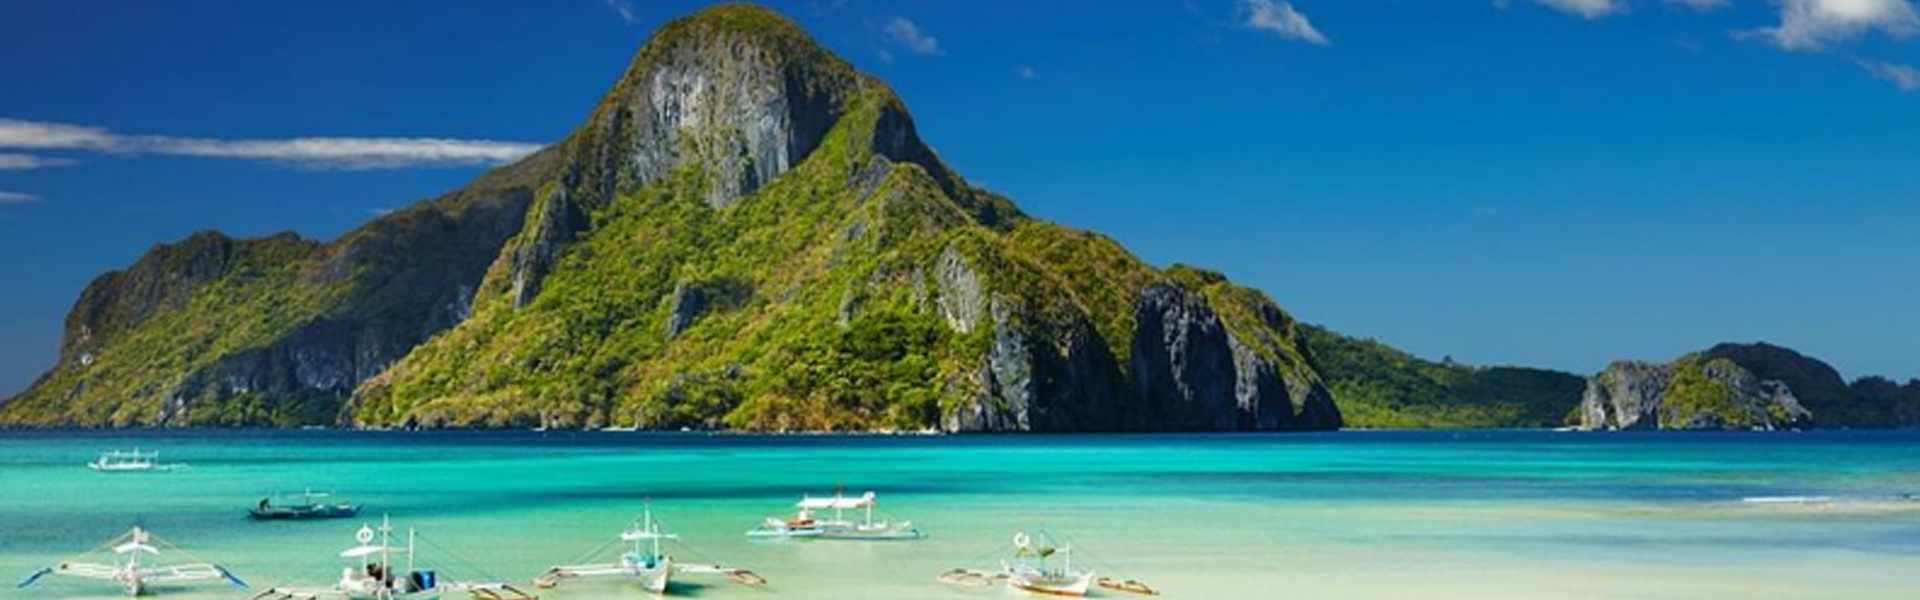 Kinh nghiệm du lịch Philippines tự túc chi tiết nhất -  Khám phá thiên đường biển đảo cùng MoMo